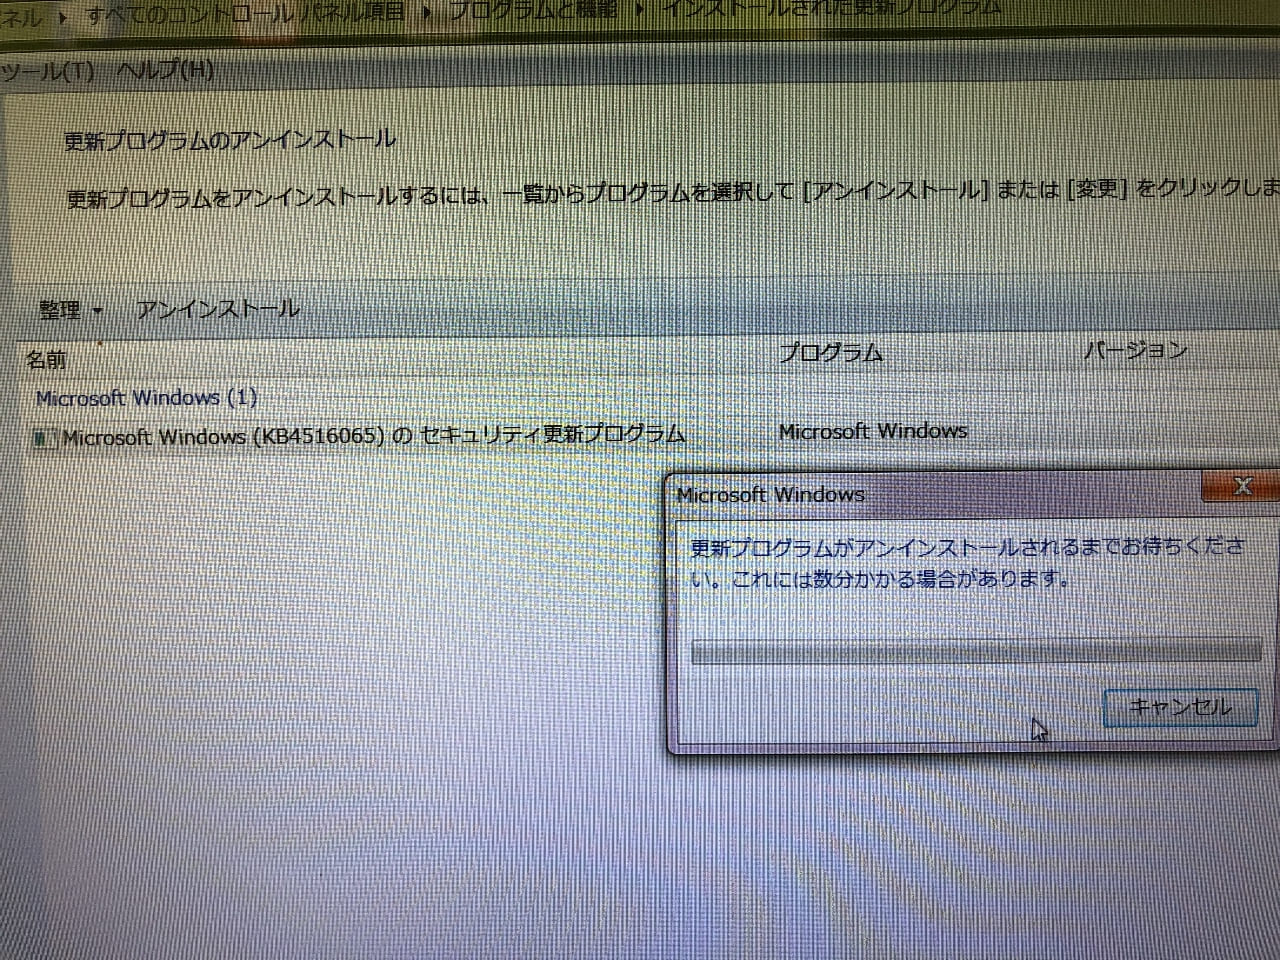 19年9月インターネット Ie11 日本語入力トラブル原因はwindowsupdate Kb Windows7 東京3900円パソコン修理 でじサポ39訪問サポート